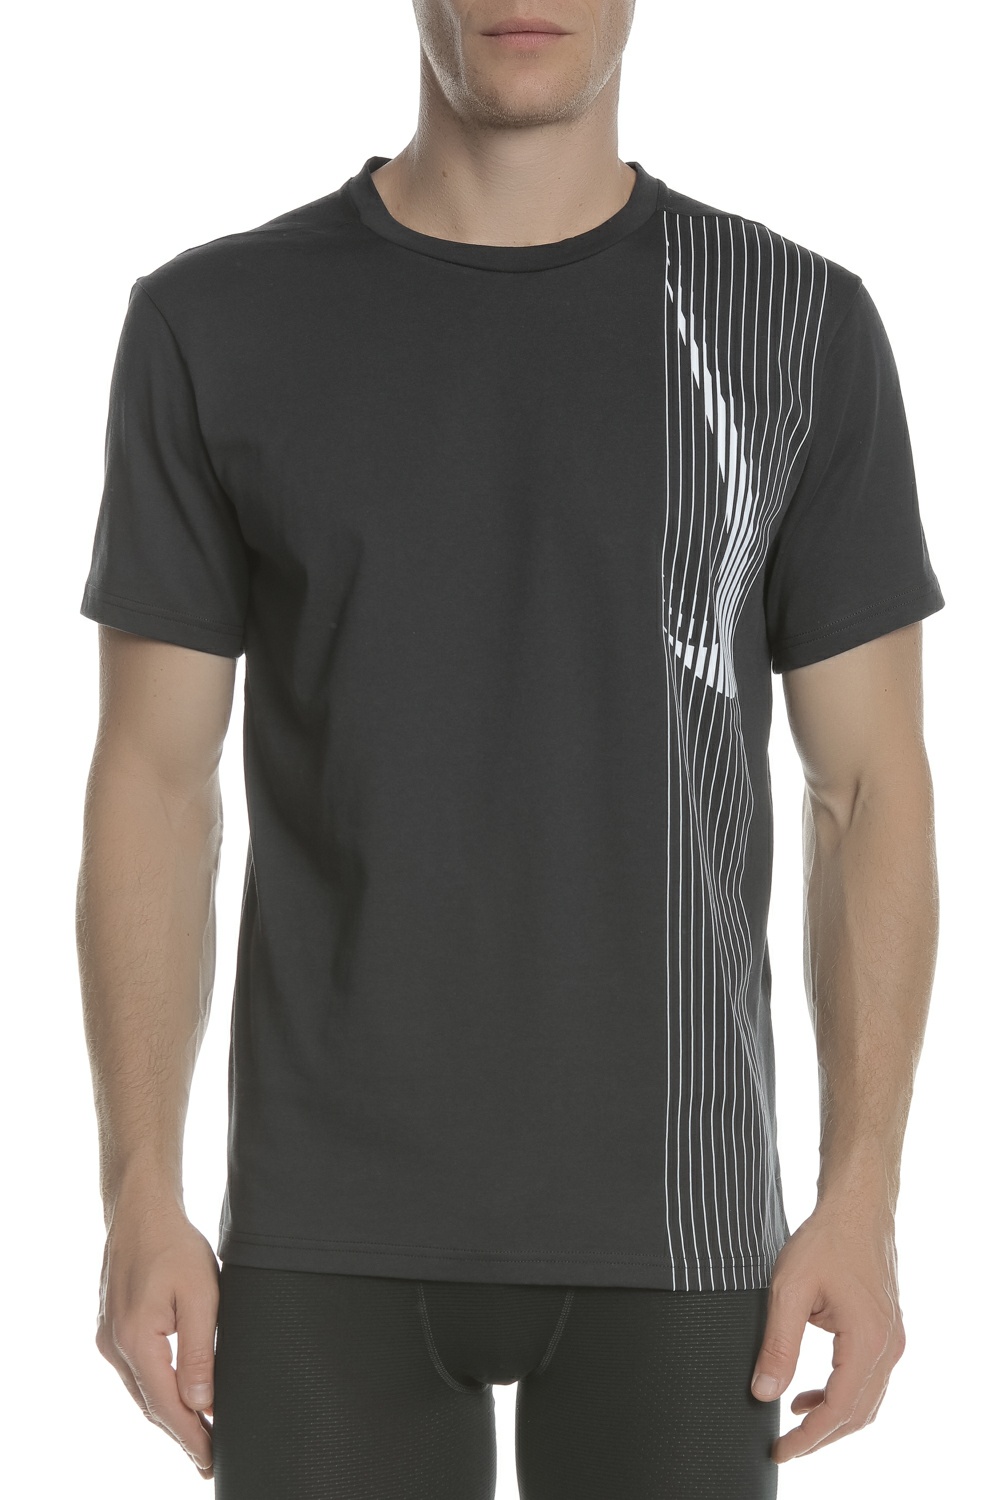 Ανδρικά/Ρούχα/Αθλητικά/T-shirt NIKE - Ανδρική κοντομάνικη μπλούζα Nike Dri-FIT μαύρη